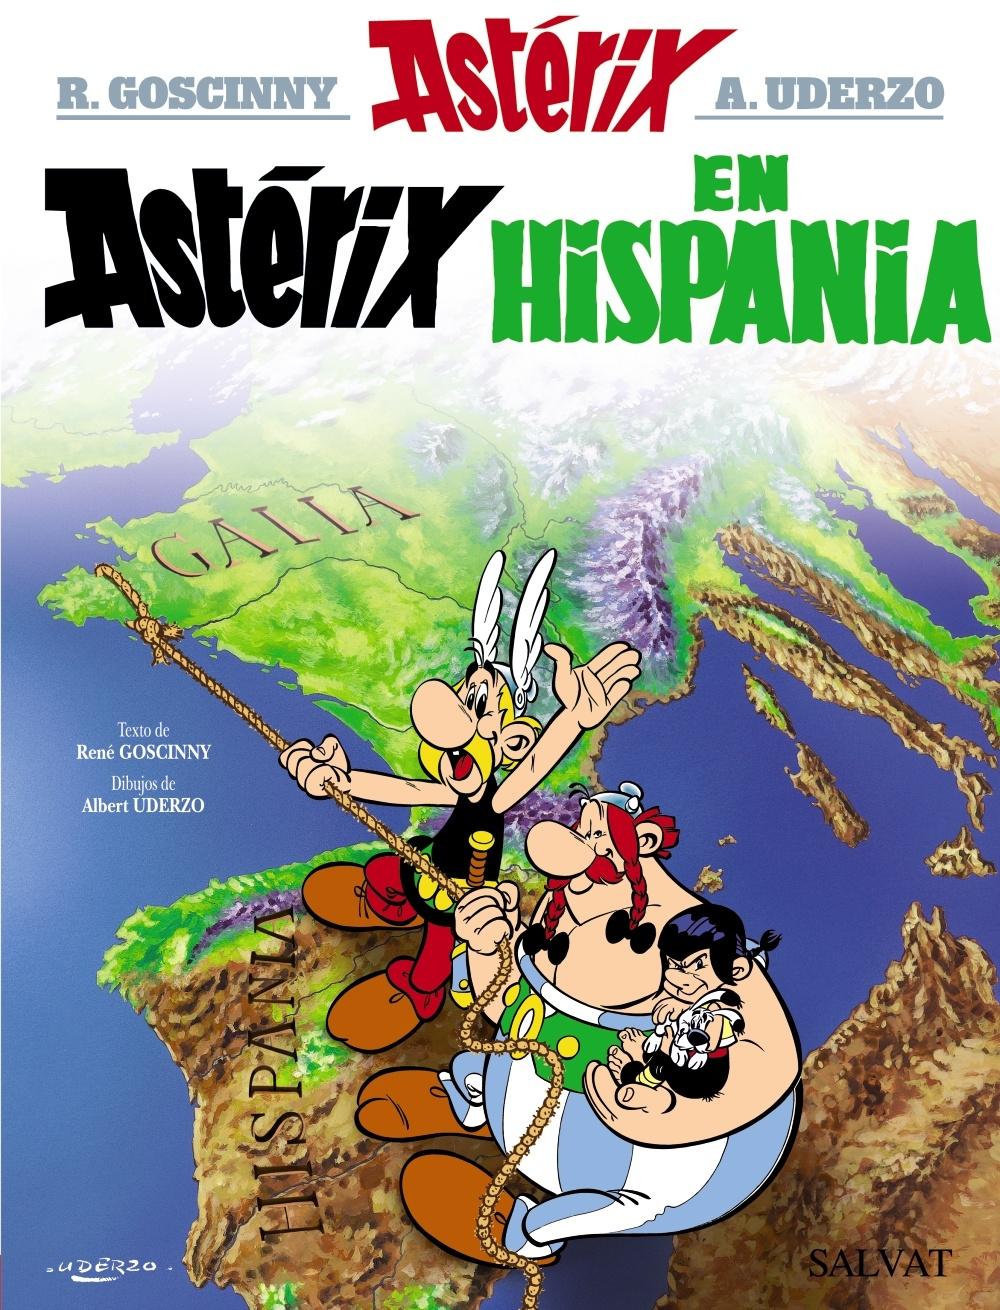 Astérix en Hispania "Astérix 14". 